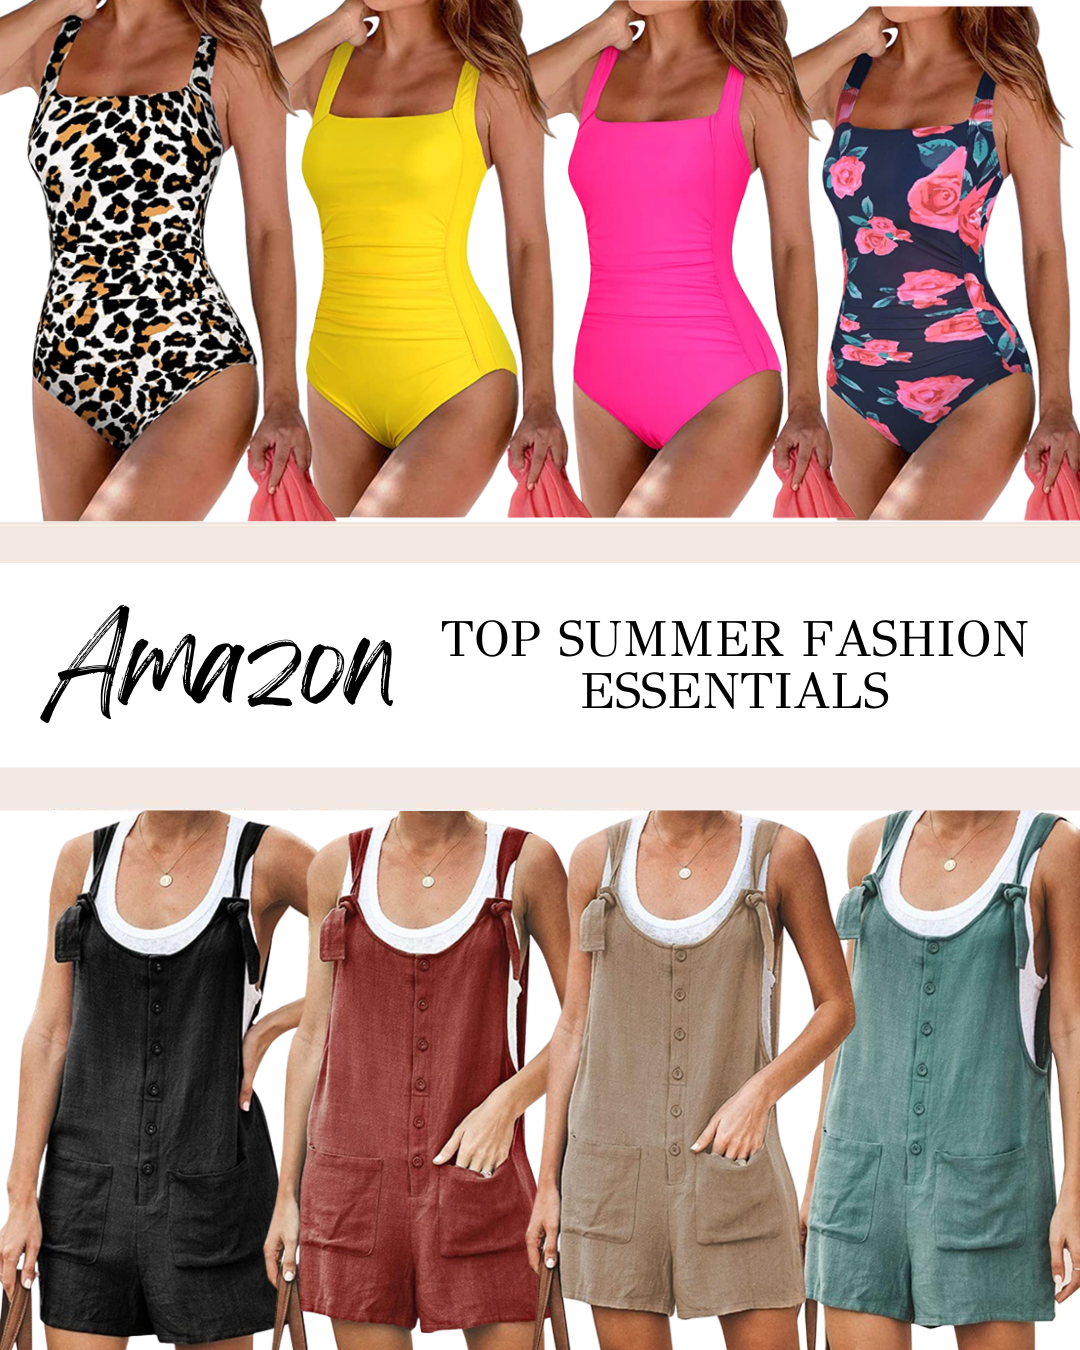 Top Amazon Summer Fashion Essentials